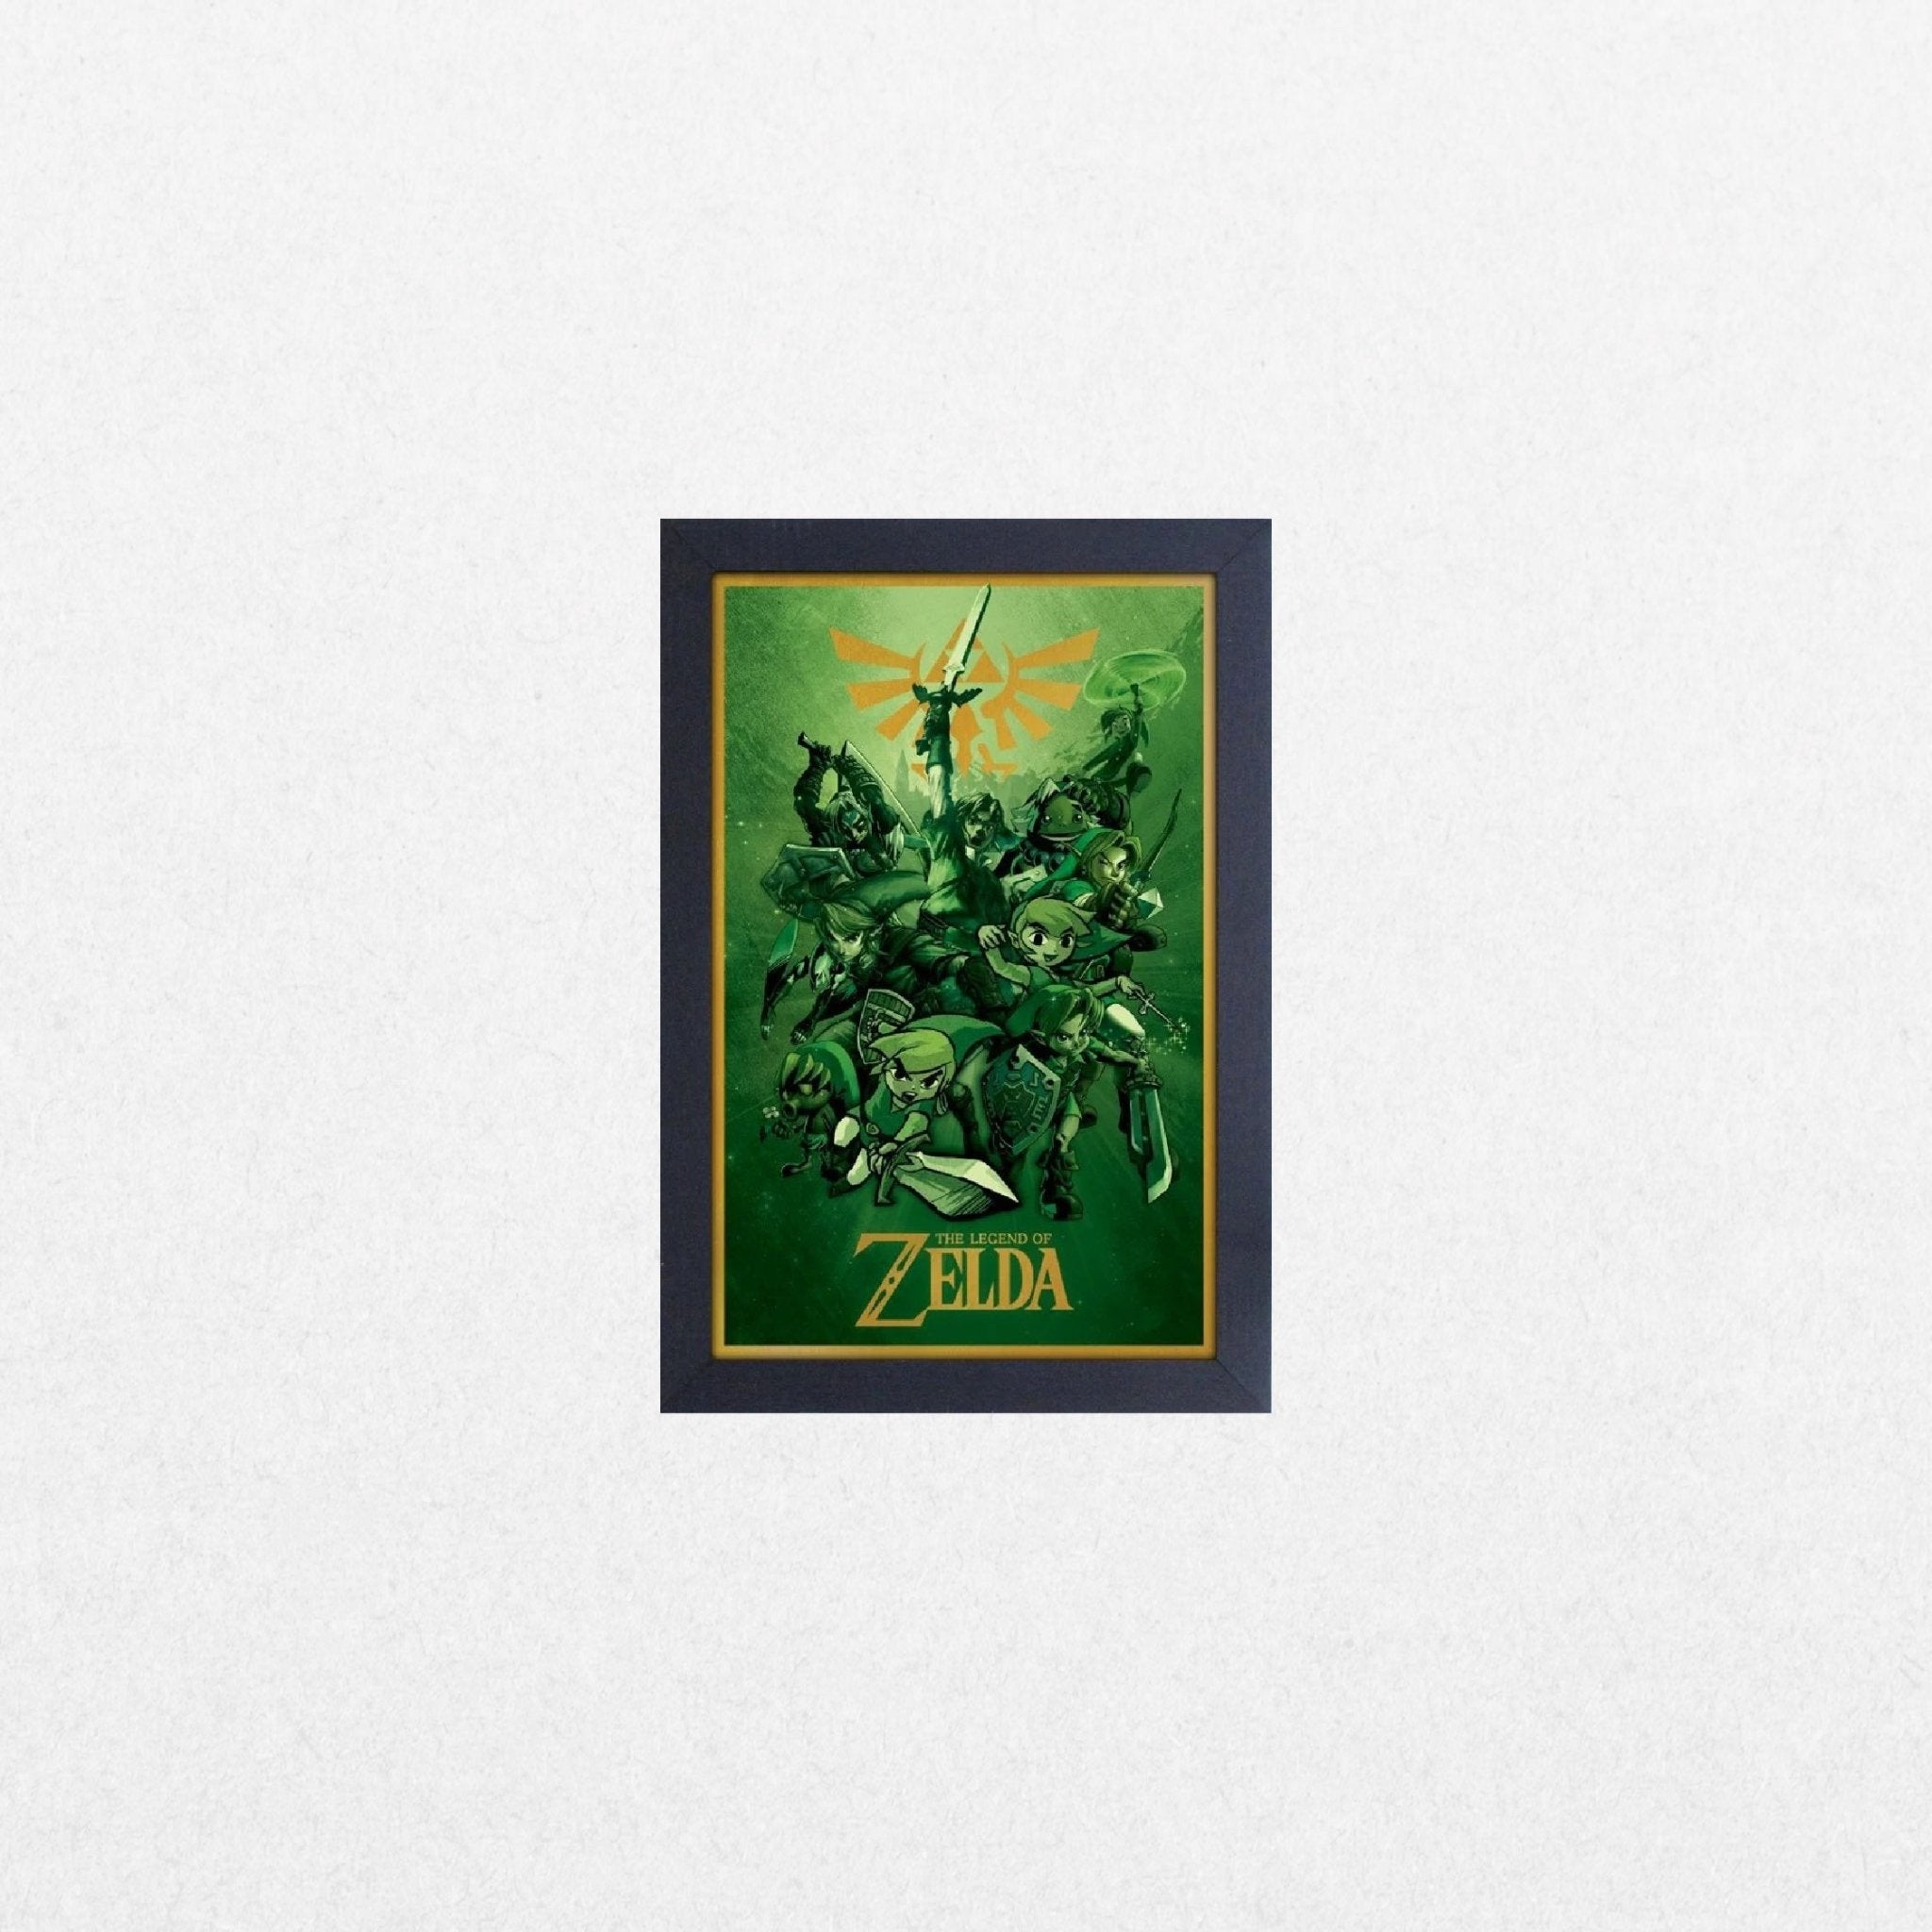 Zelda - Links - El Cartel